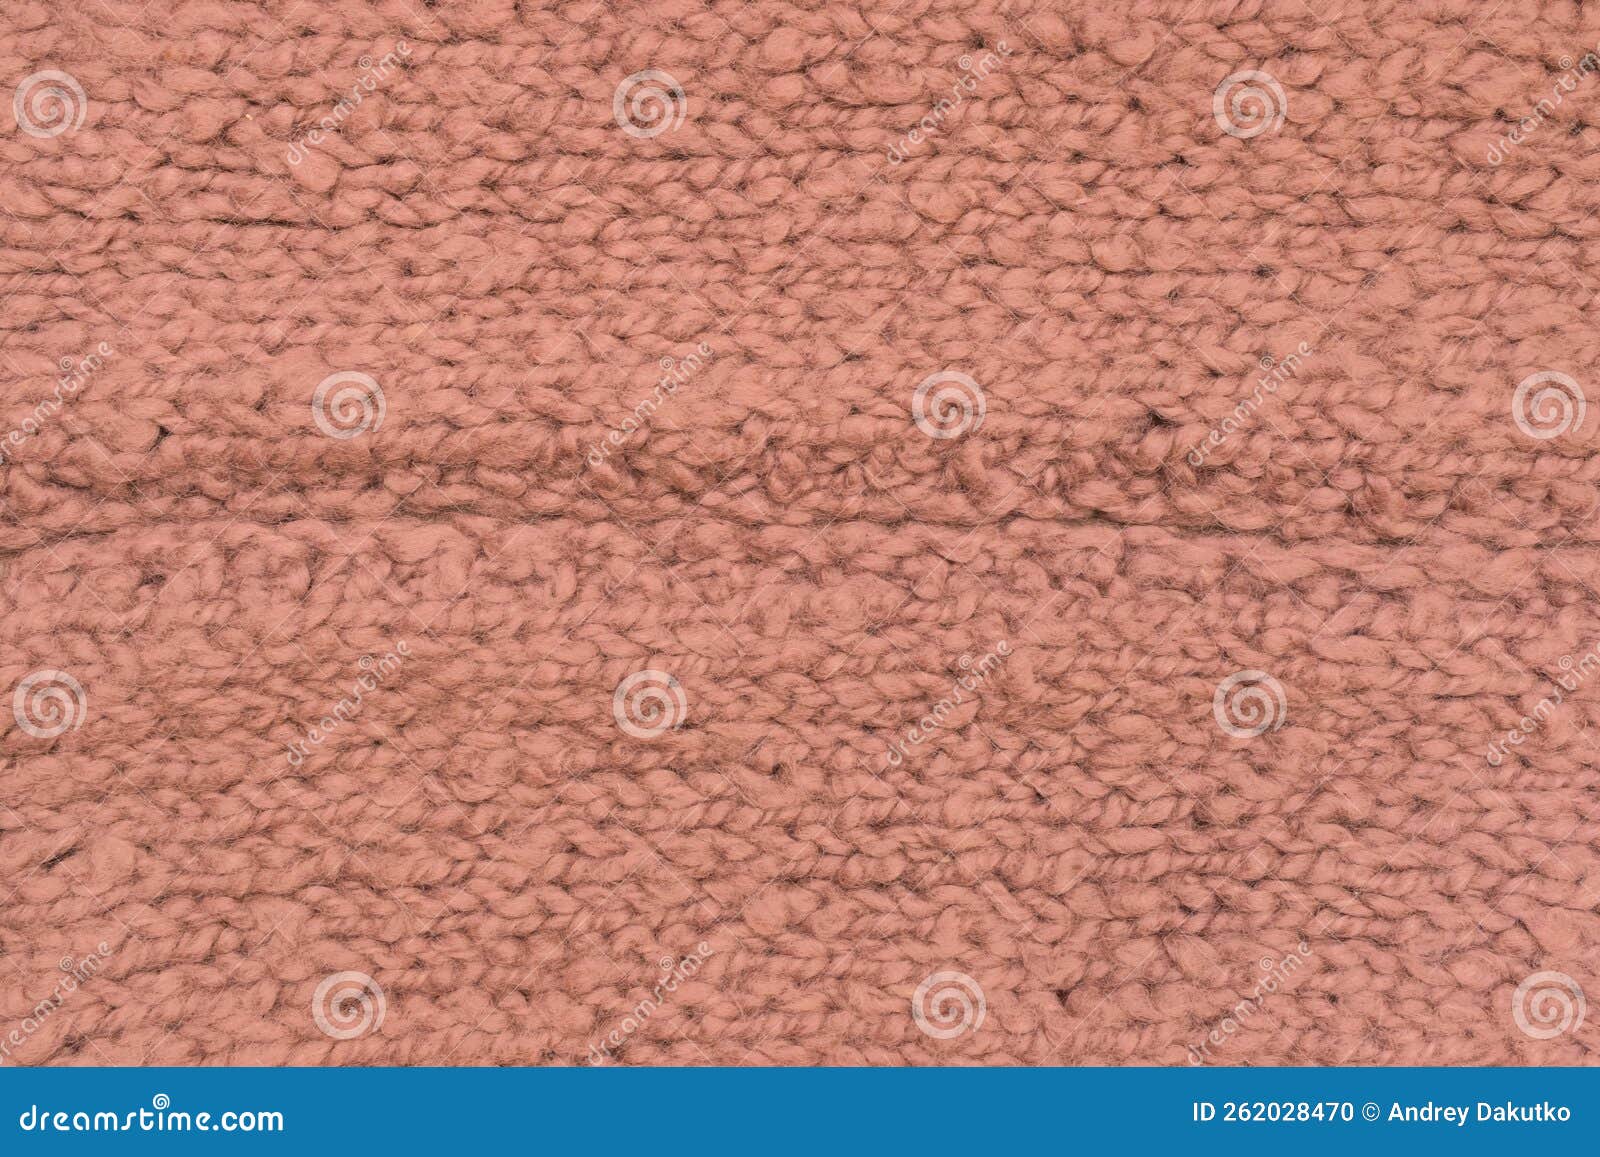 текстура текстуры текстуры из тканевых ниток светло-коричневый ткань из  волокна Стоковое Фото - изображение насчитывающей волокно, драпировка:  262028470